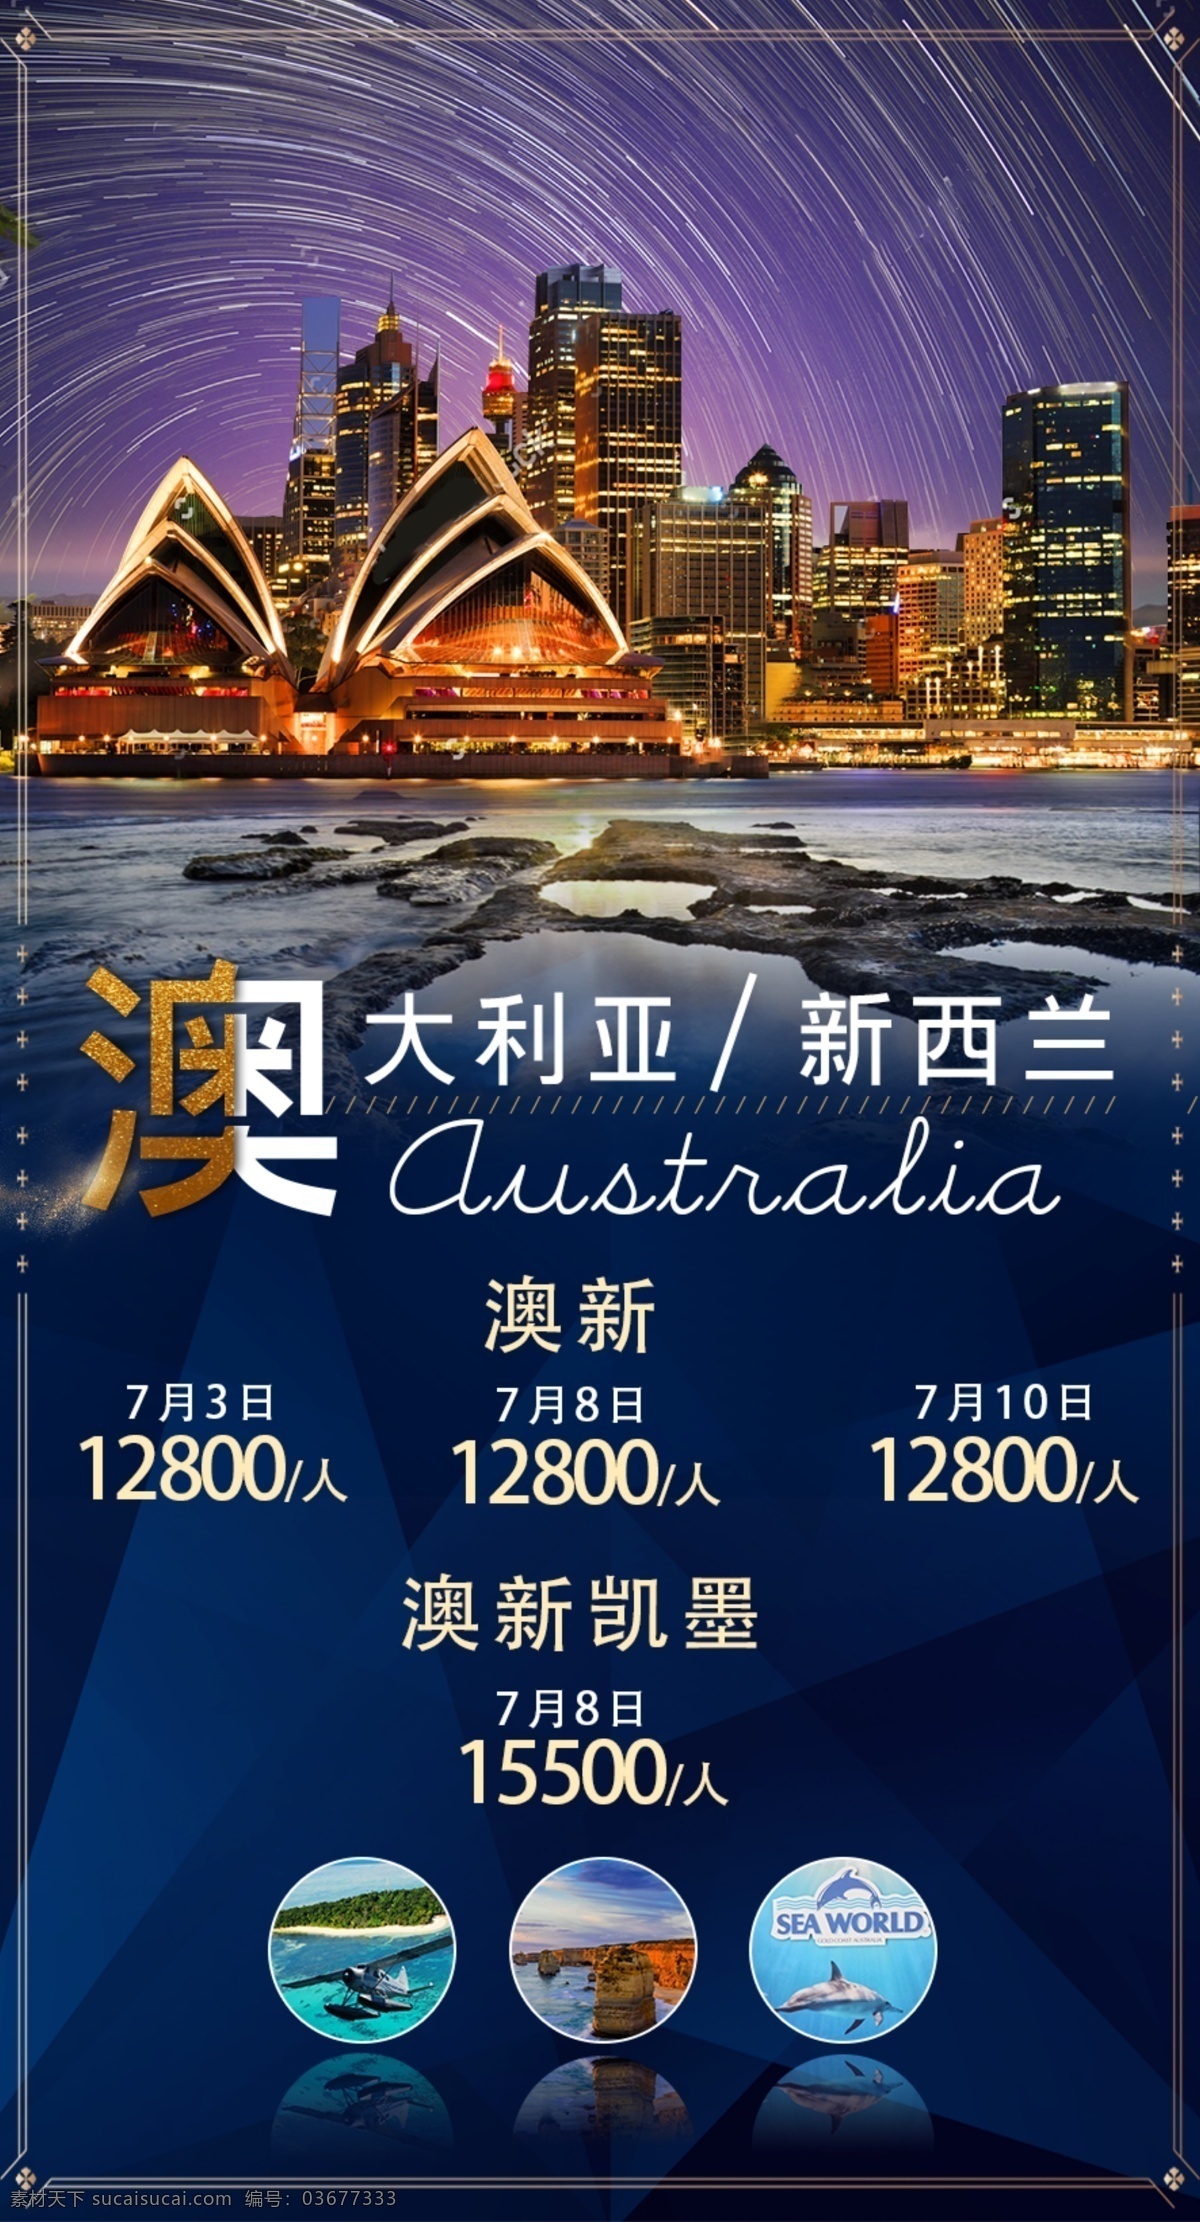 新西兰 旅游 海报 旅行 澳大利亚